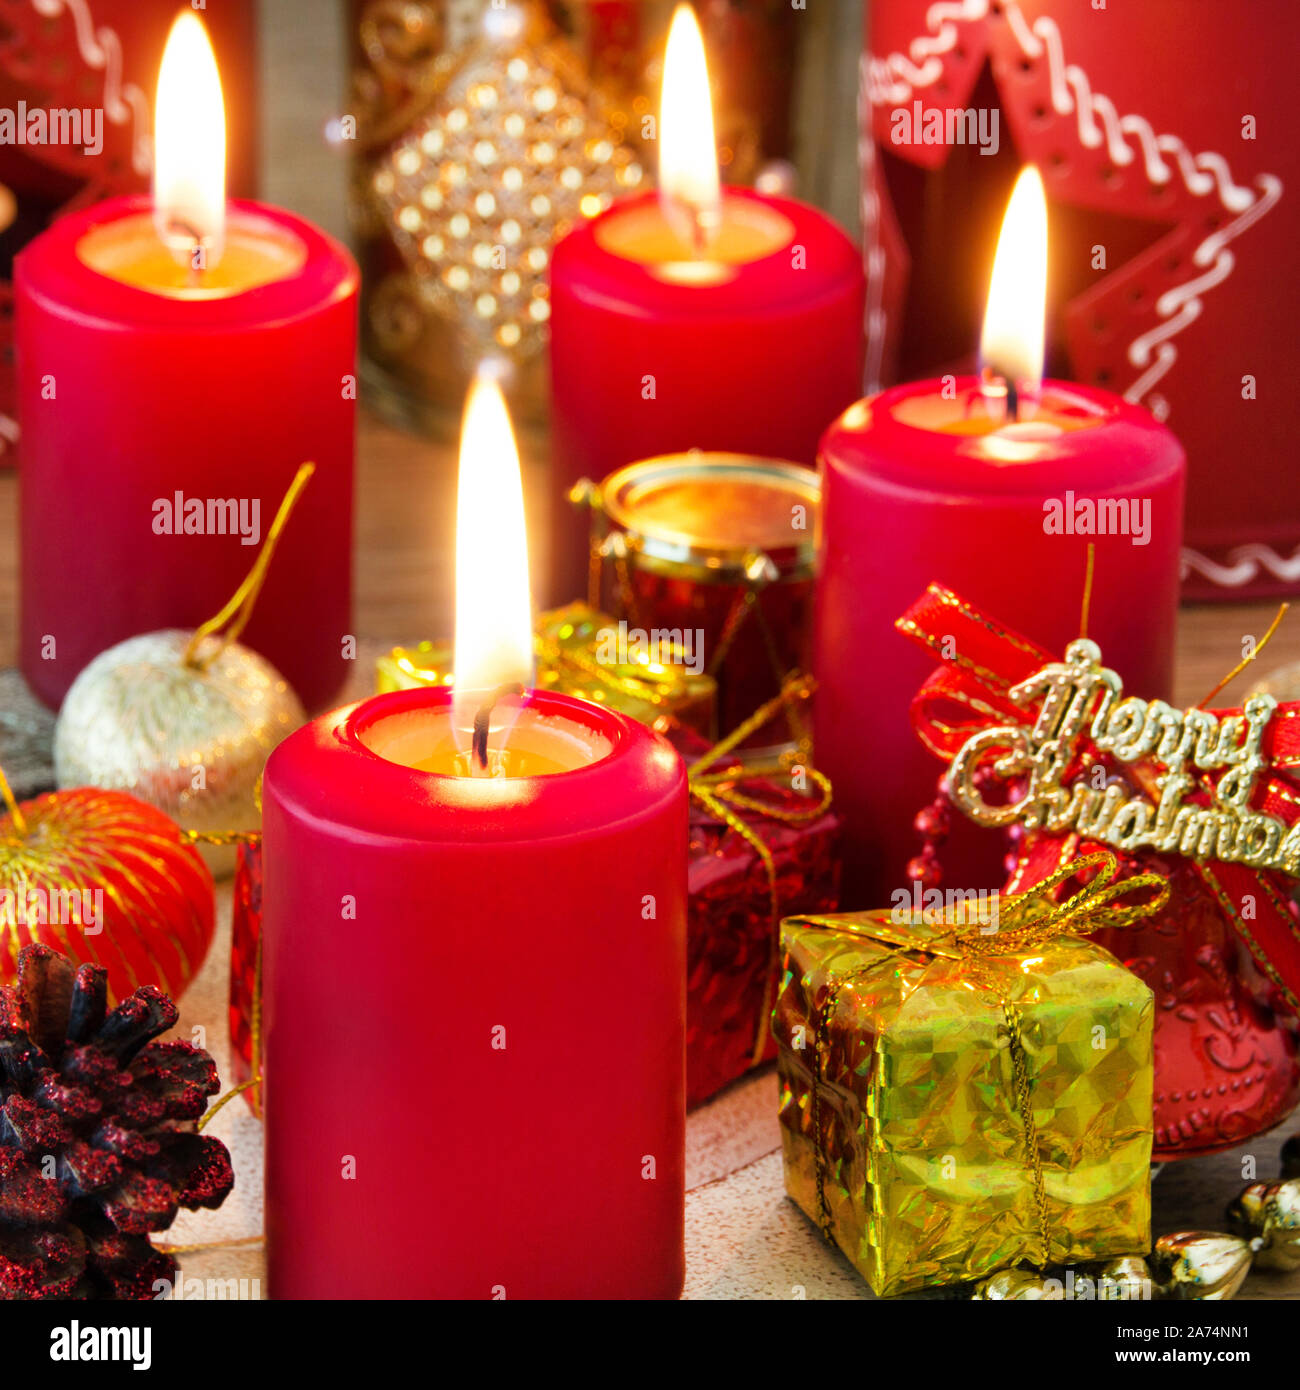 Weihnachten rote Kerzen mit Kerzenlicht und dekoration Stock Photo